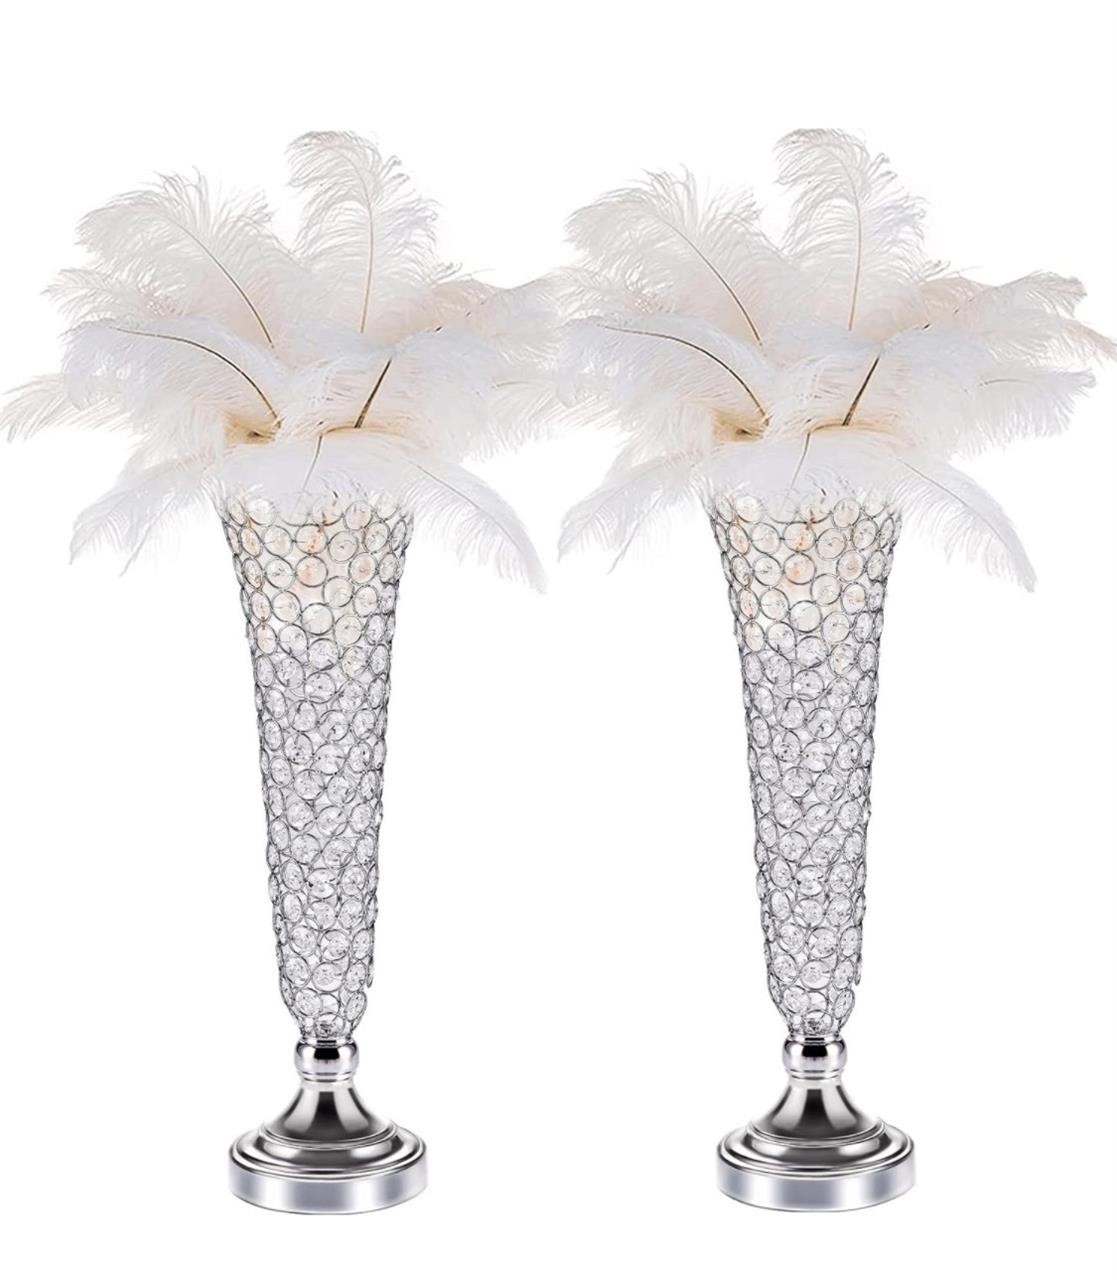 Crystal Trumpet Floral Vase -2 Pcs Centerpieces